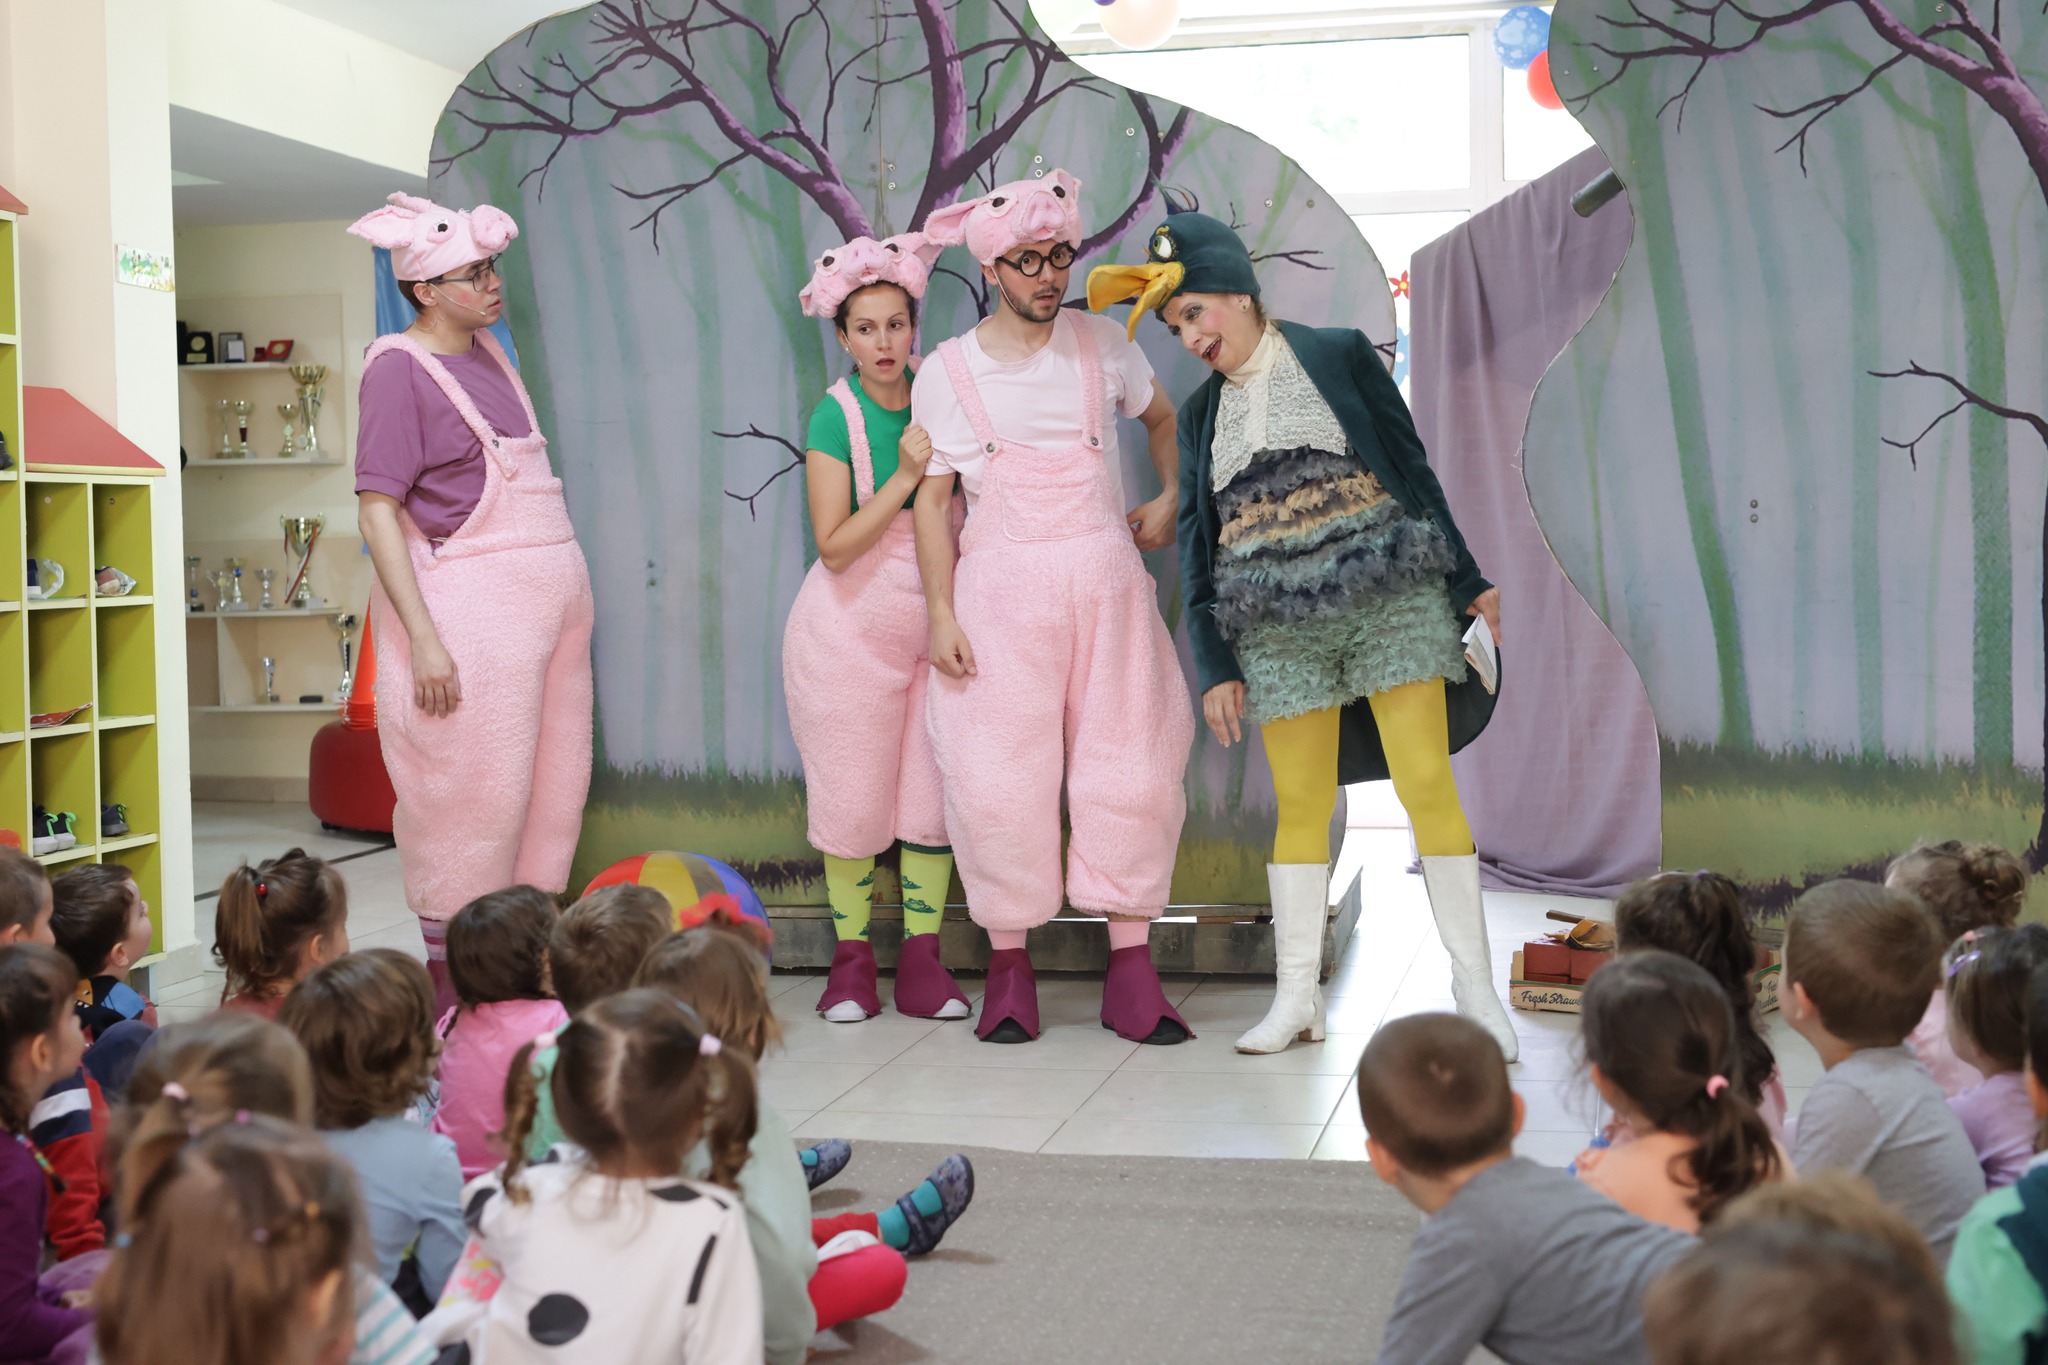 Снимка: В детска градина 136 "Славия" със спектакъла "Трите прасенца" от Александър Райчев